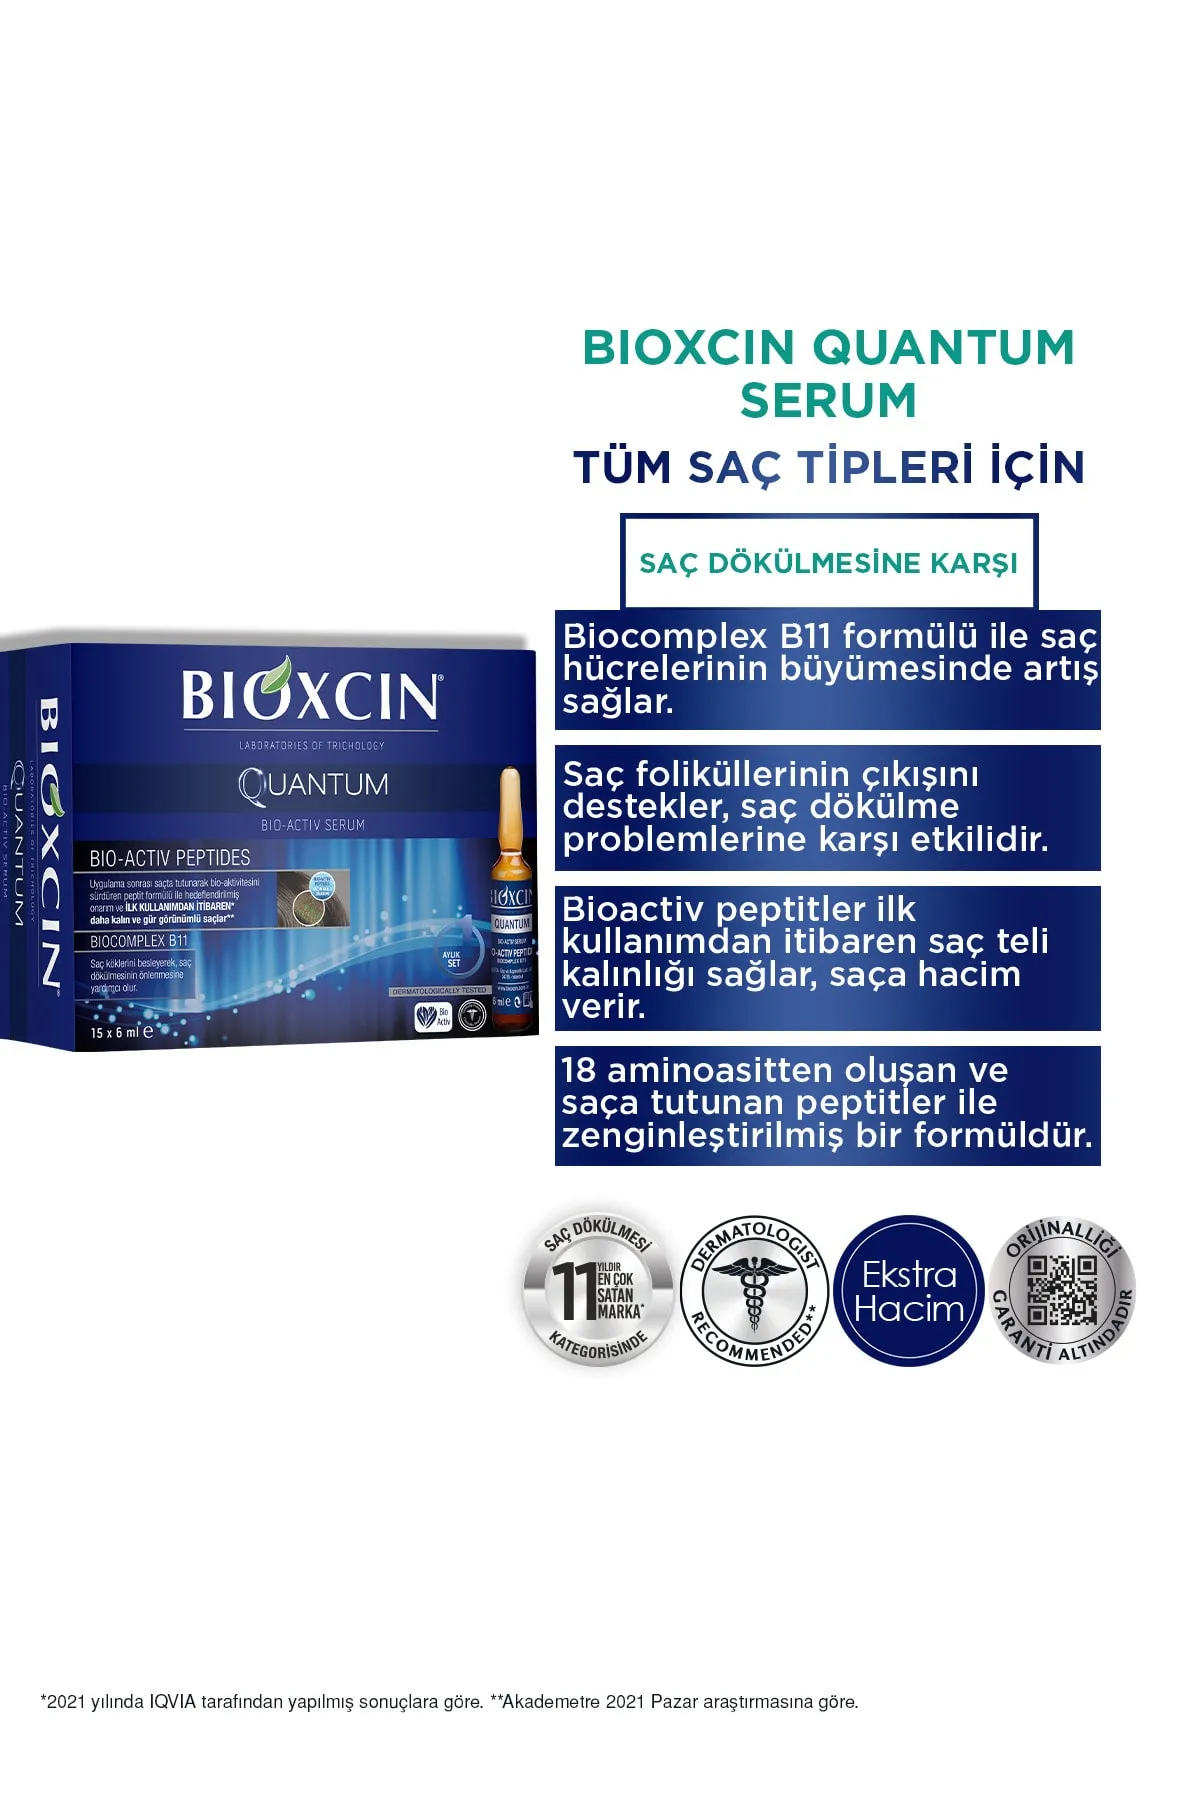 BIOXCIN Quantum Serum 15 x 6 ml - 3